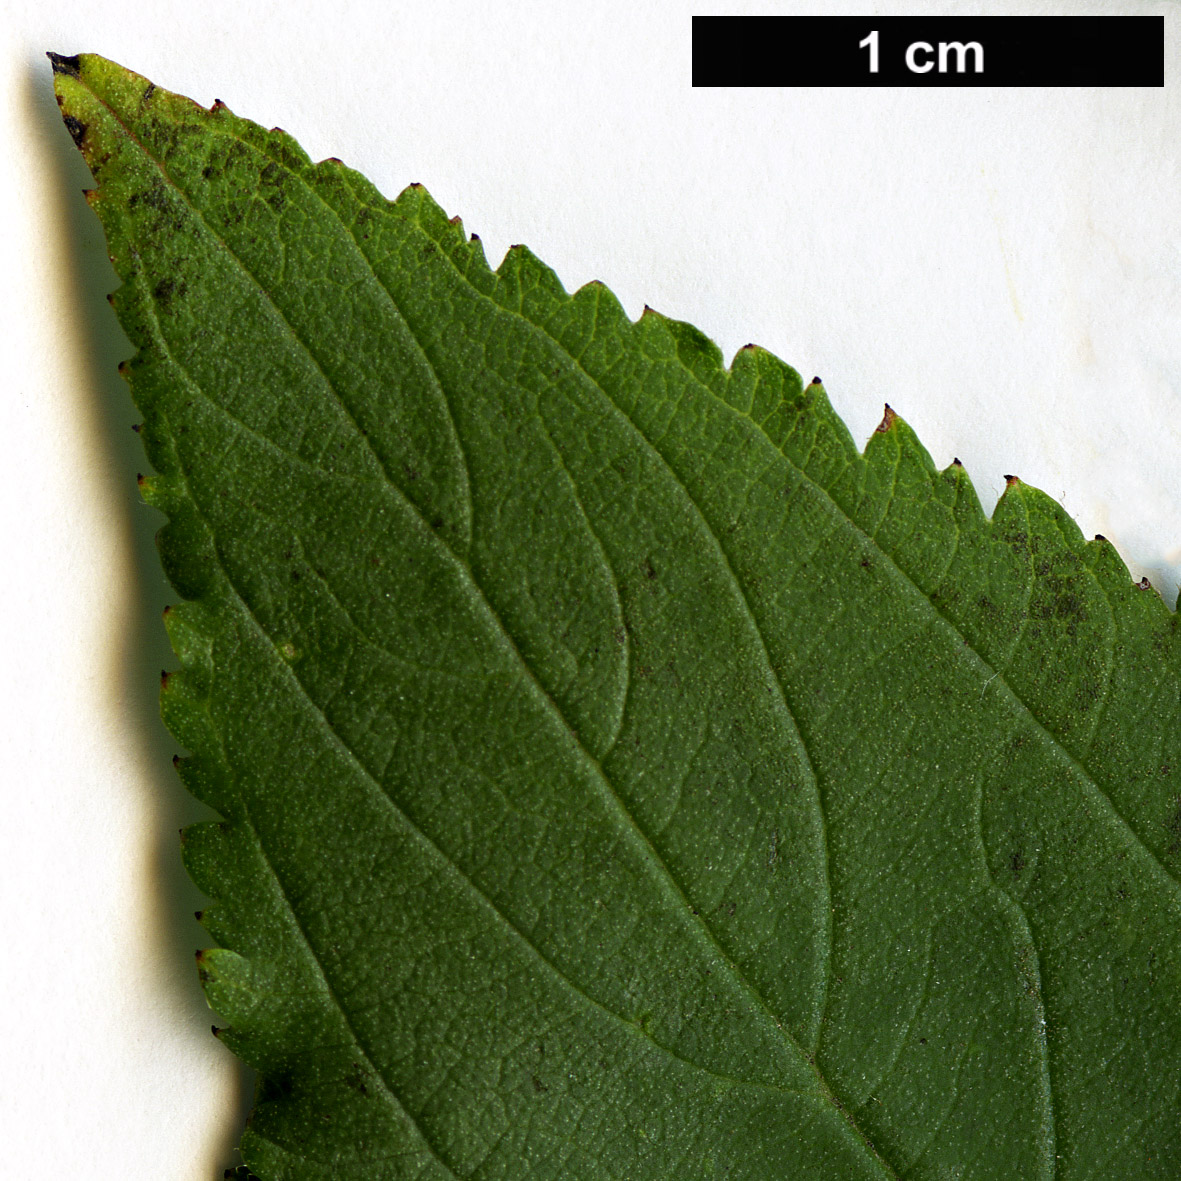 High resolution image: Family: Rhamnaceae - Genus: Ceanothus - Taxon: americanus